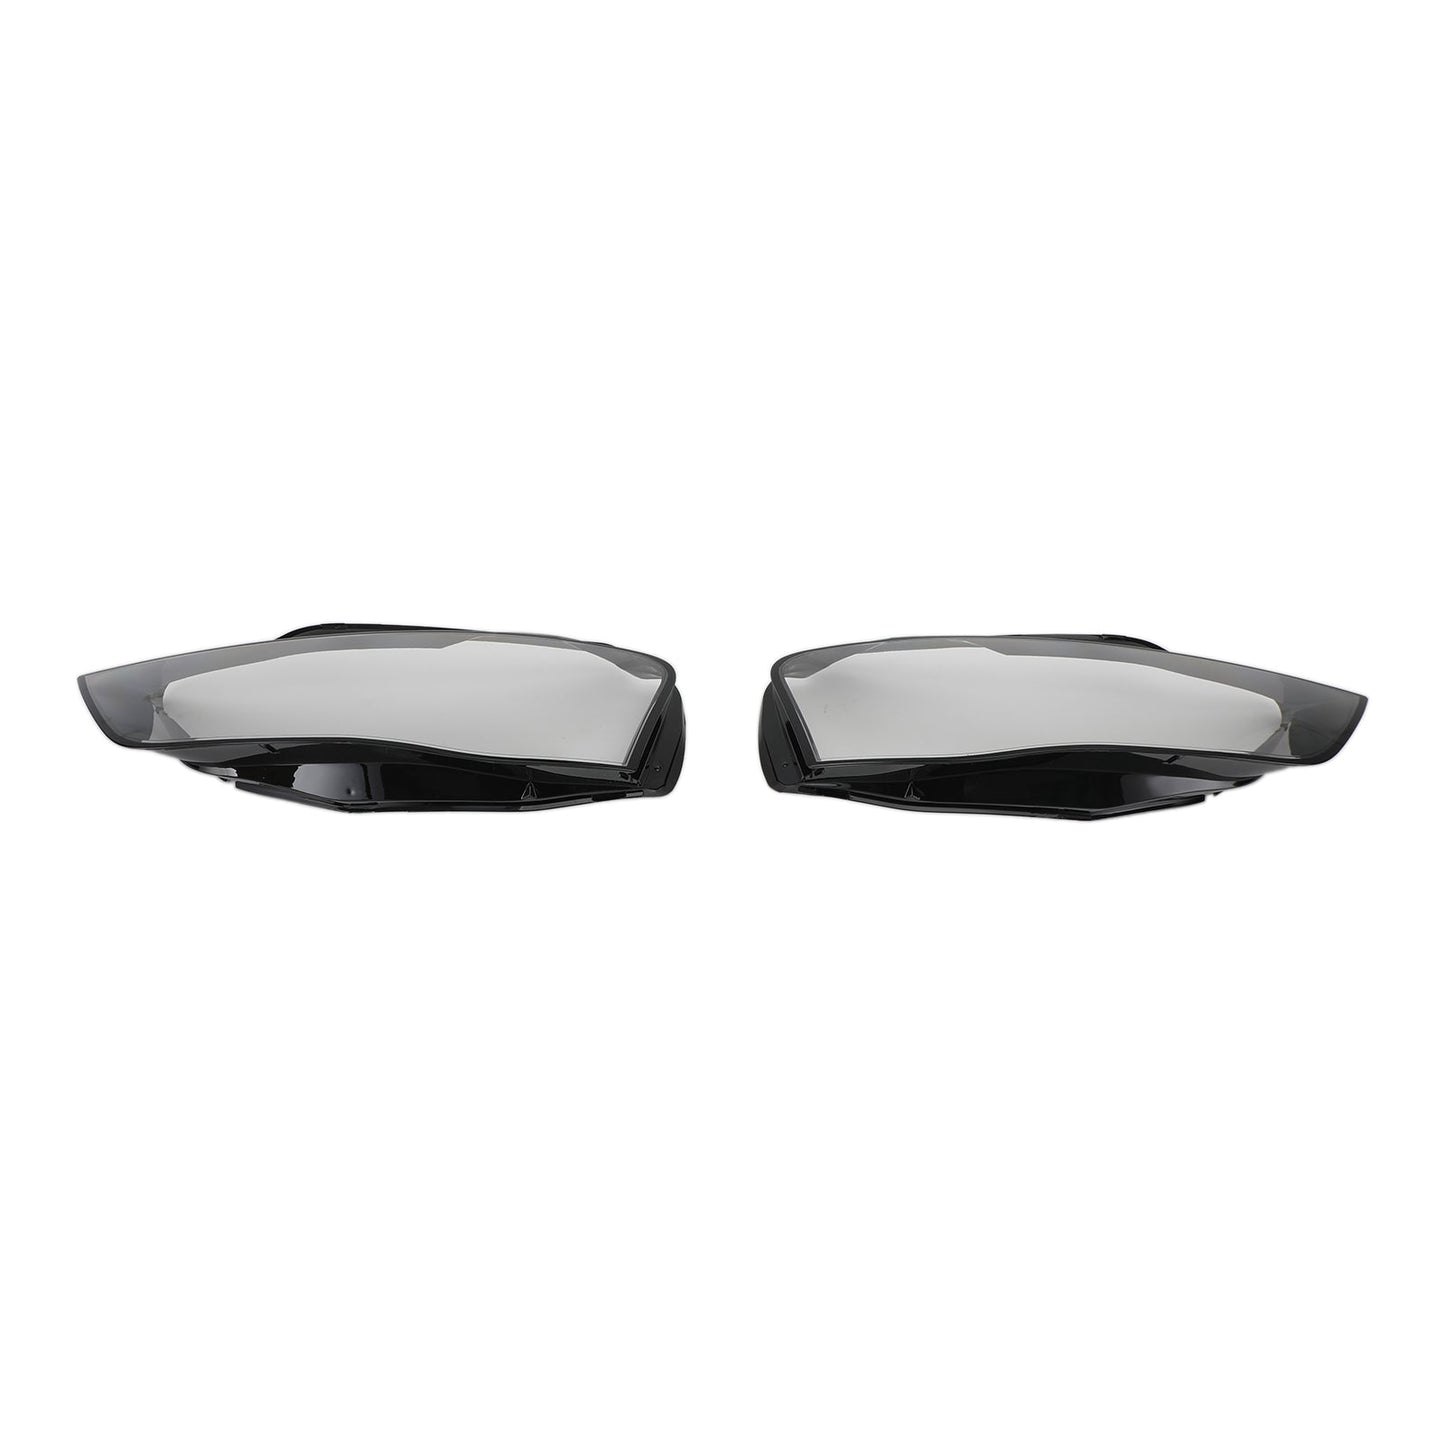 2012-2016 Audi A4 B8 Facelift Headlight Lens Plastic Cover Shell Left +Right